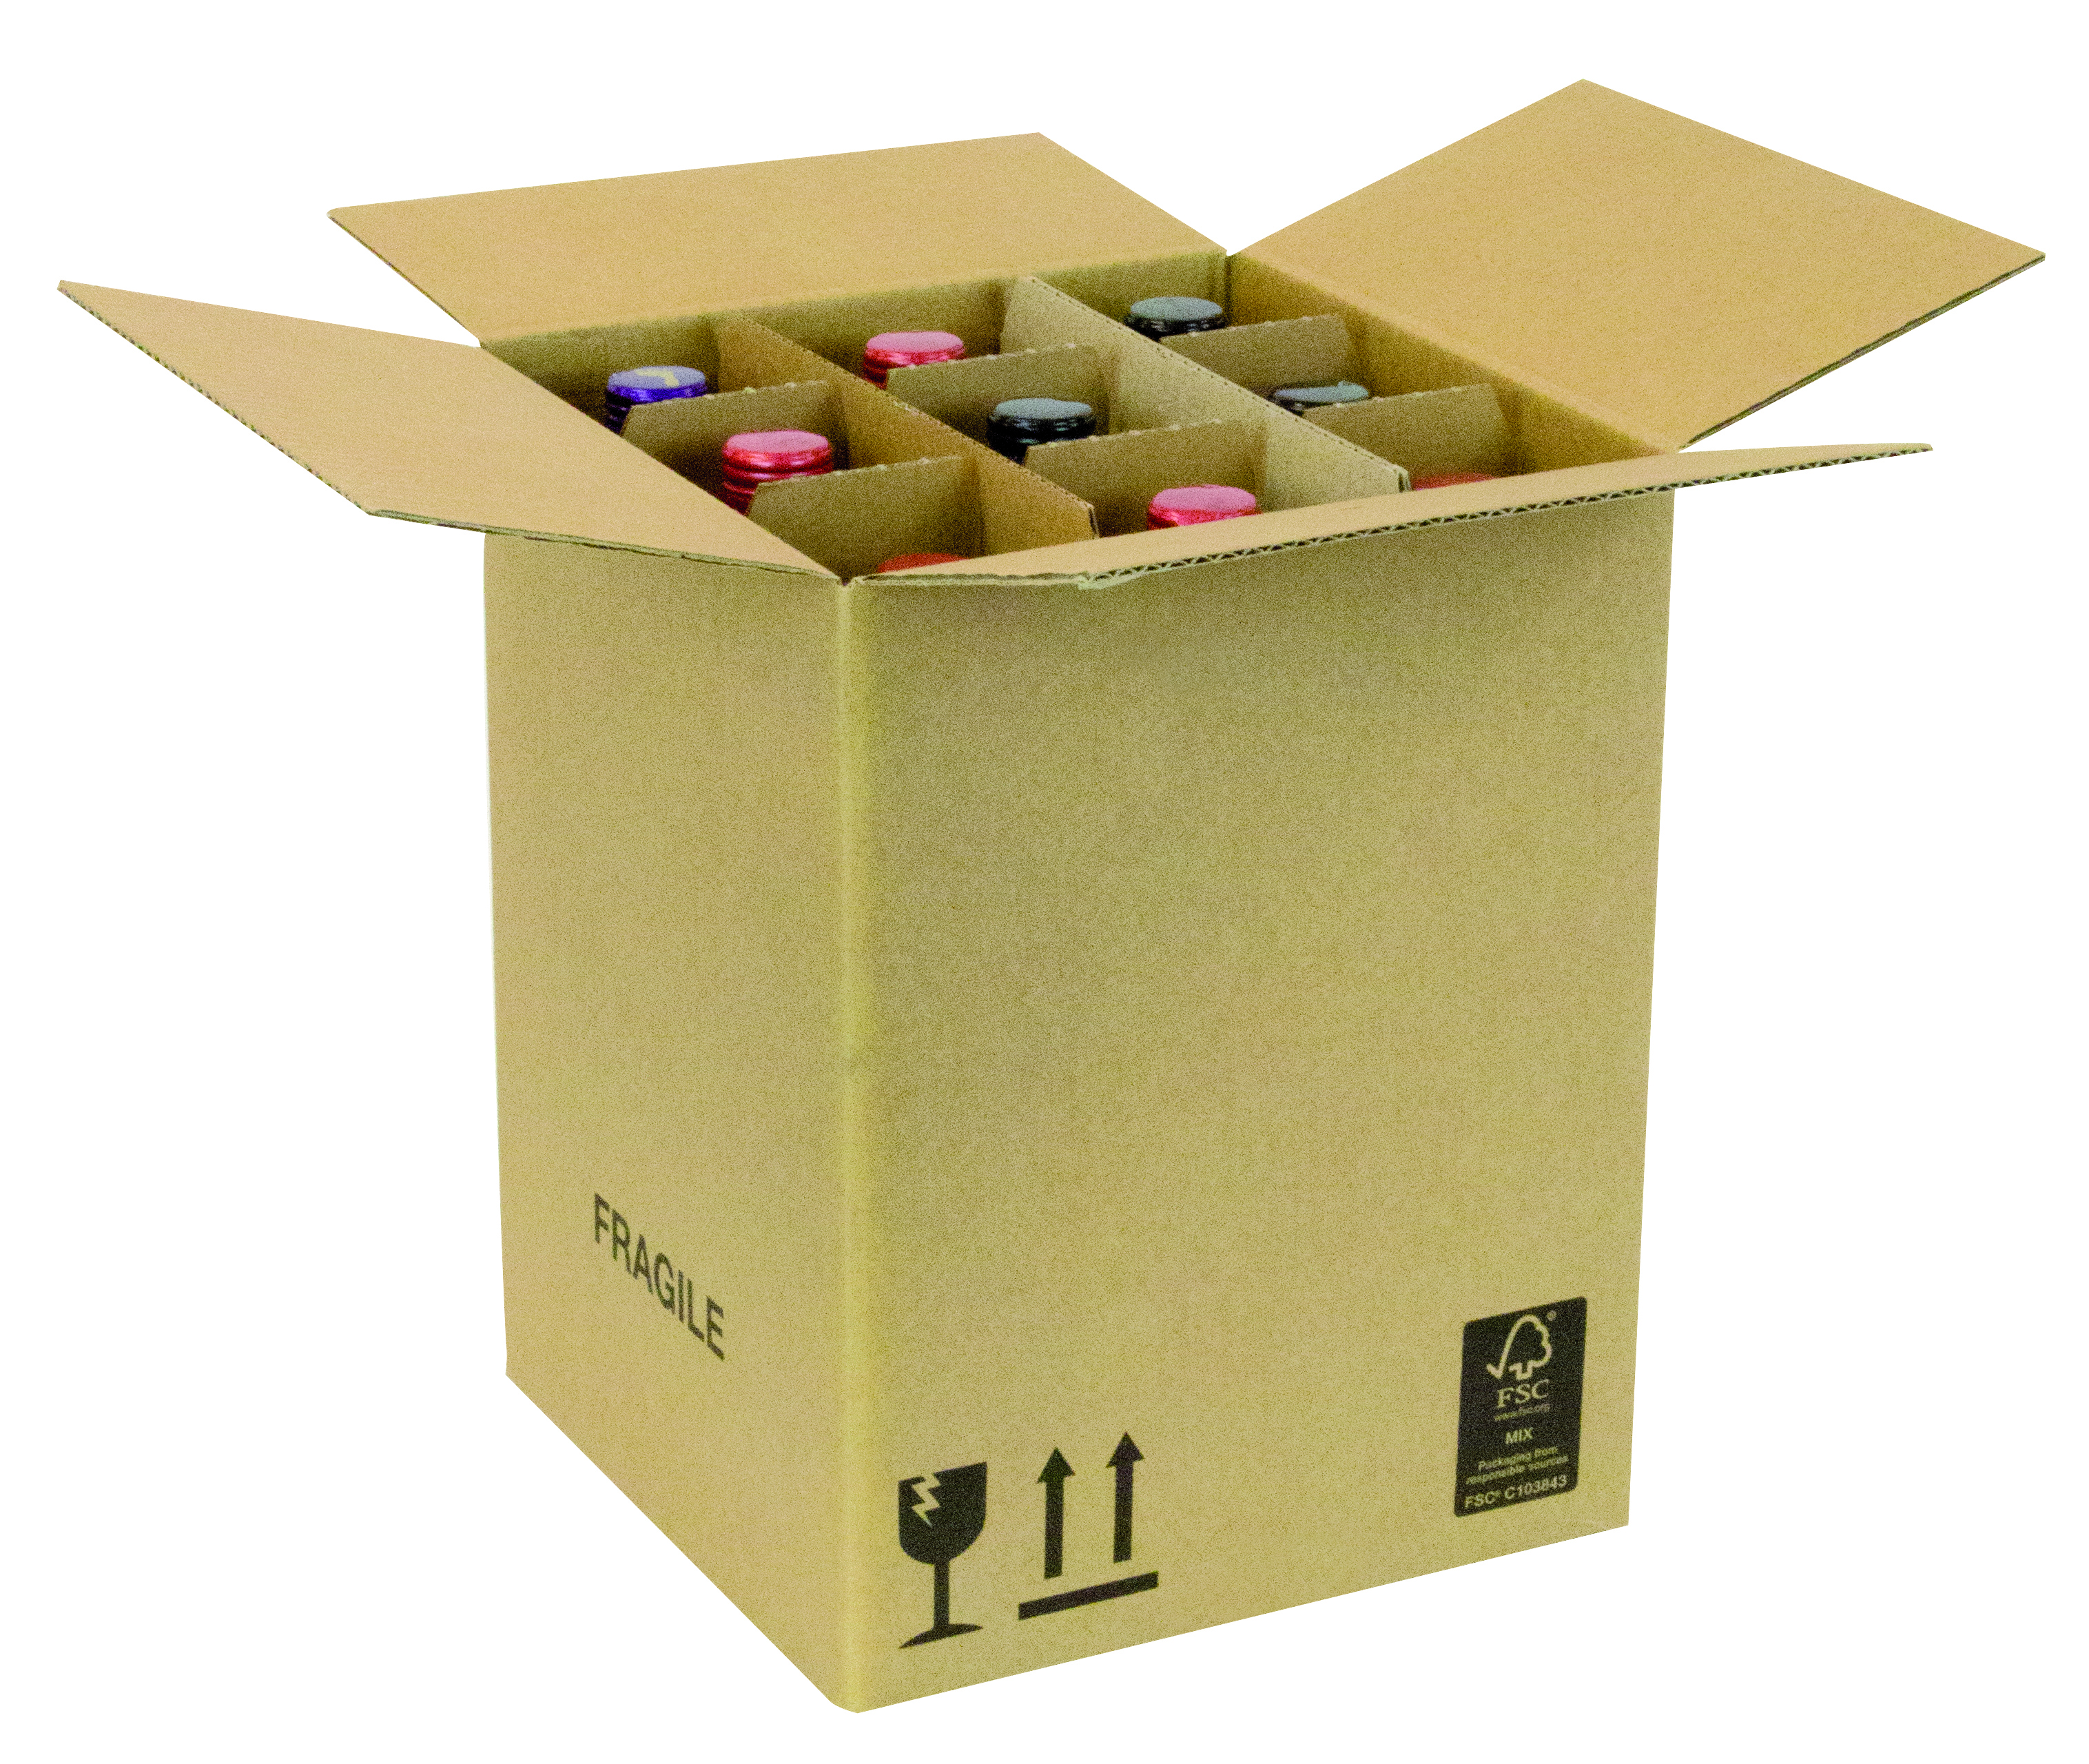 Boîte d'expédition pour 9 bouteilles La caisse carton qui expédie vos bouteilles parfaitement protégées.